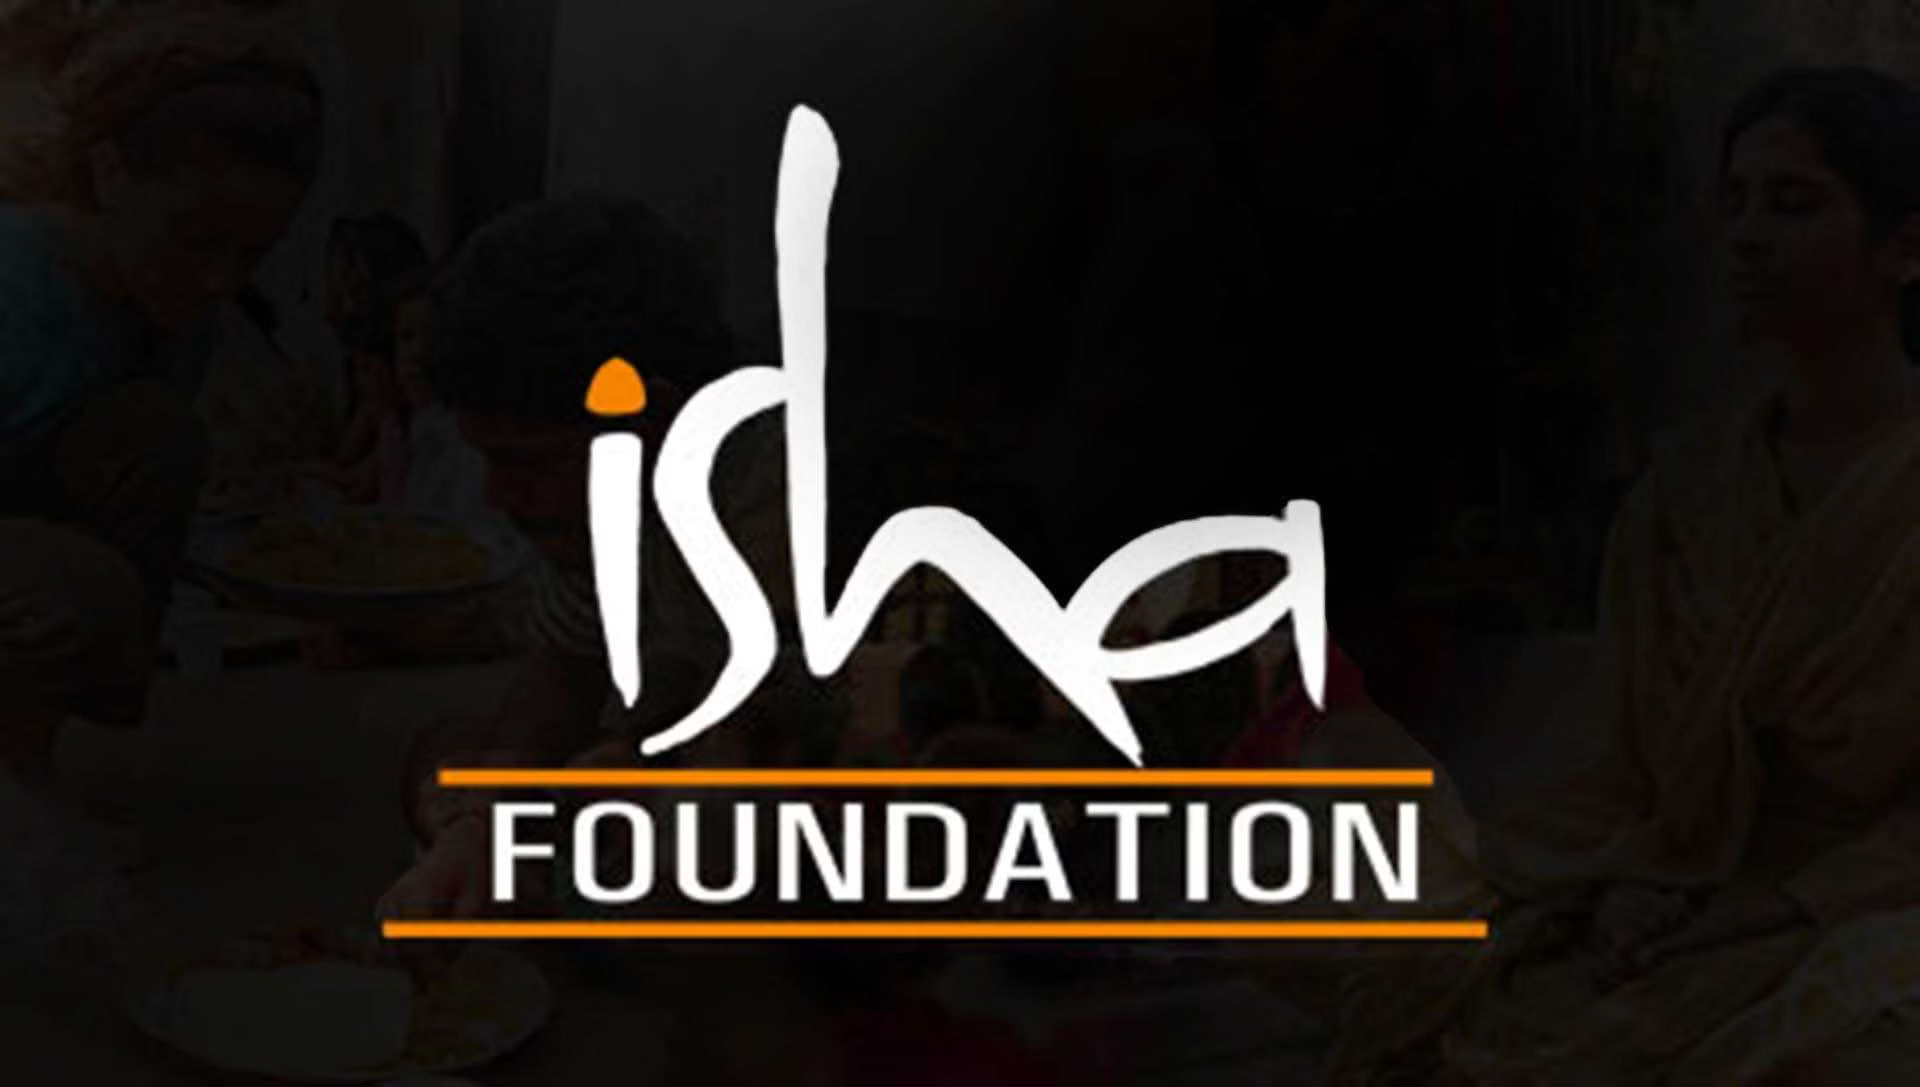 Isha Foundation ঈশার বিরুদ্ধে অভিযোগগুলির সত্যতা  The Truth Behind Allegations Against Isha